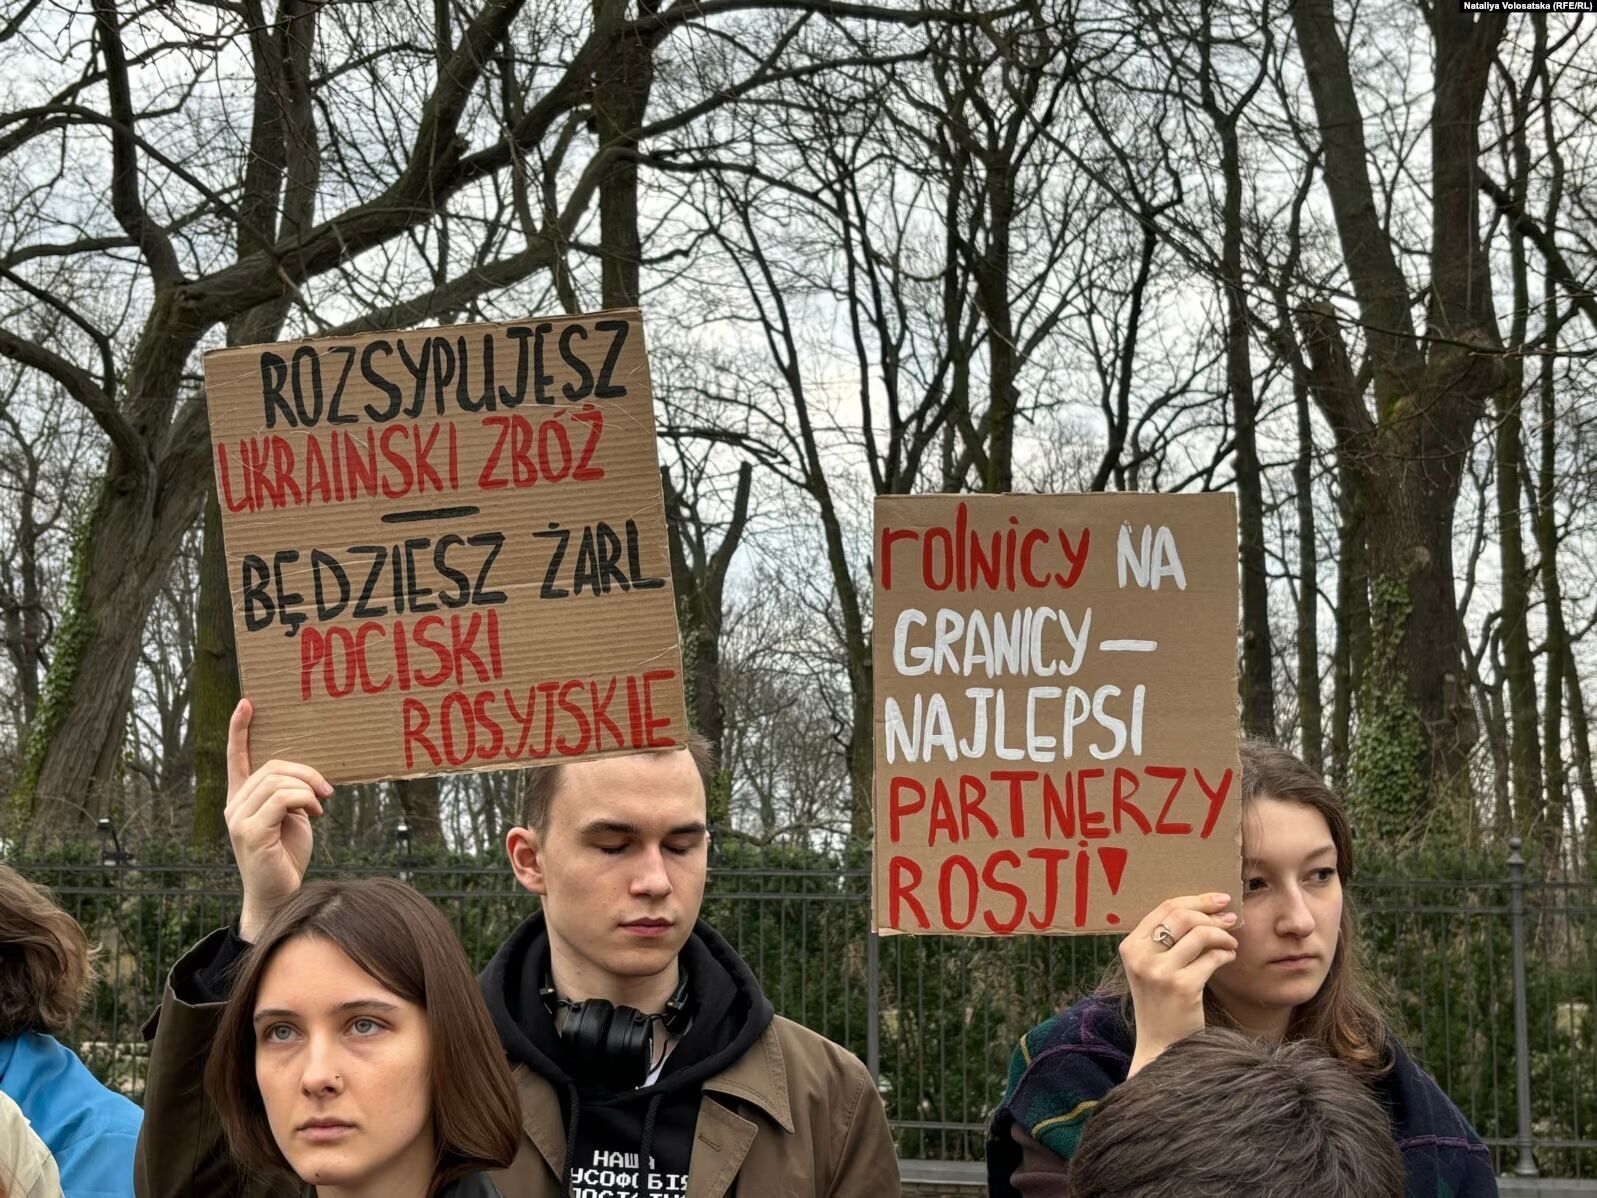 "Граница – линия жизни": в Варшаве протестовали против блокады границы с Украиной. Фото